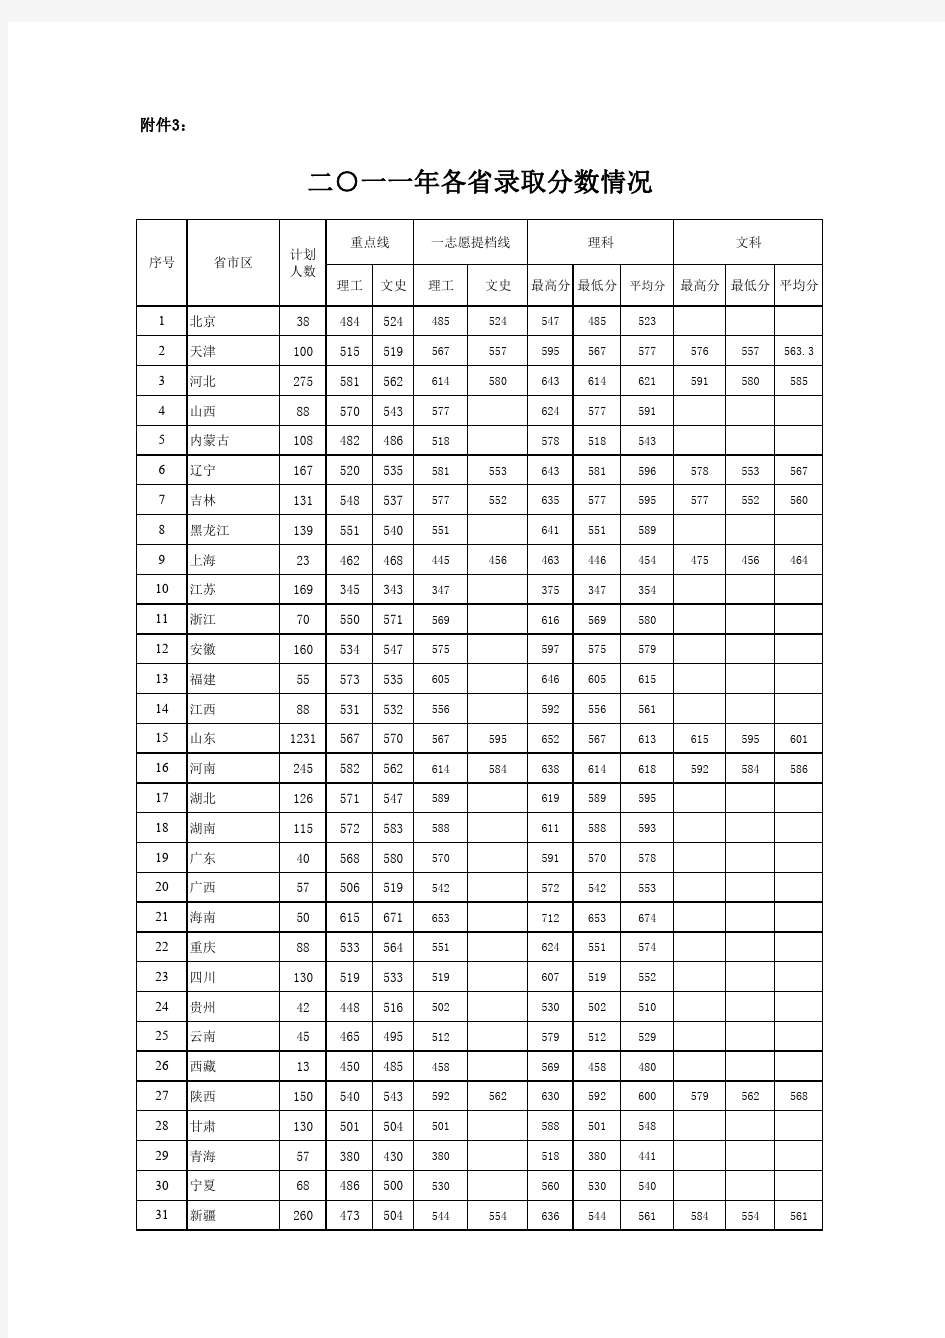 中国石油大学(华东)2011年高考各省录取分数情况